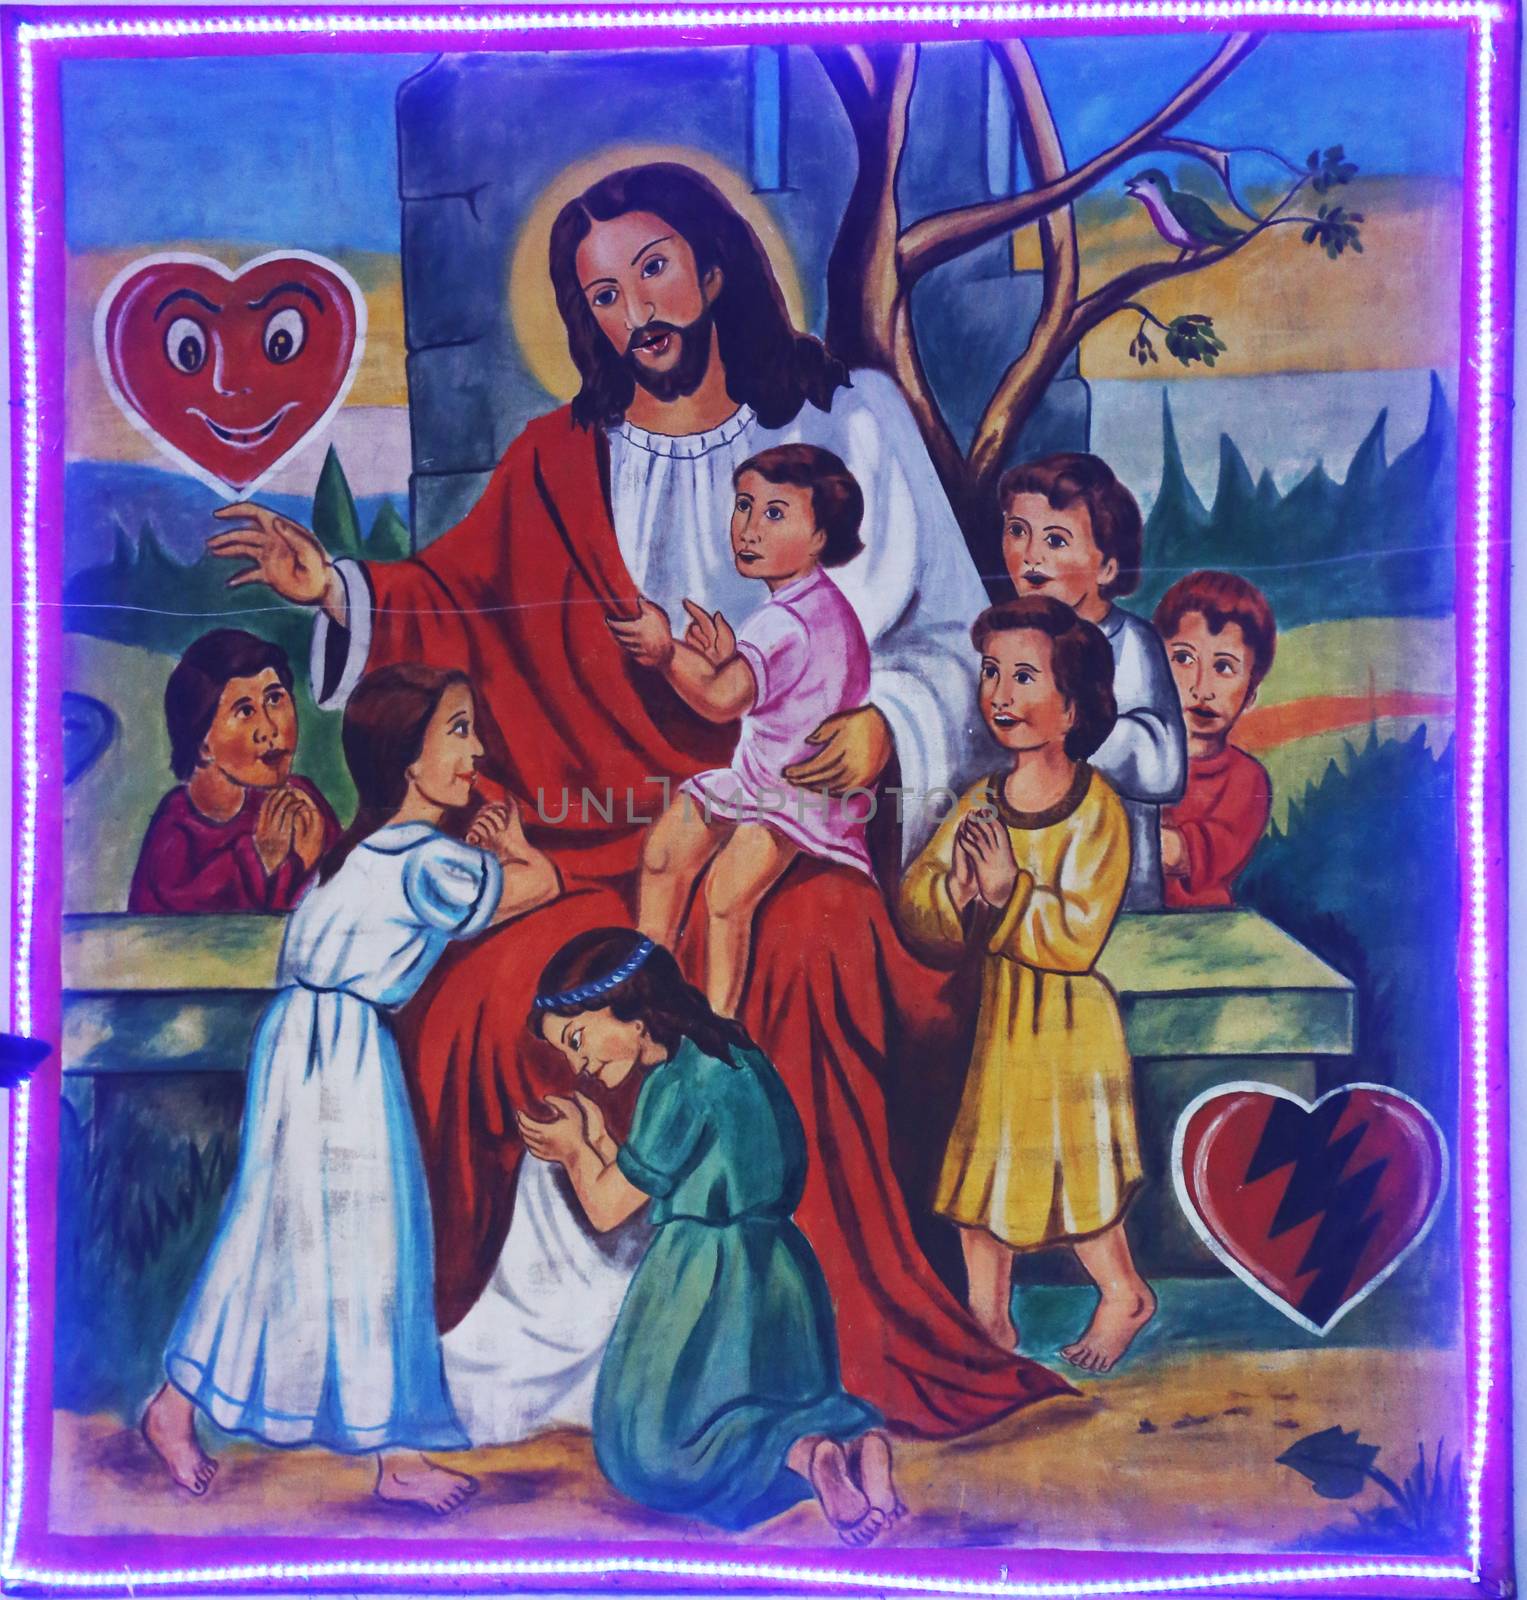 Jesus friend of children by atlas